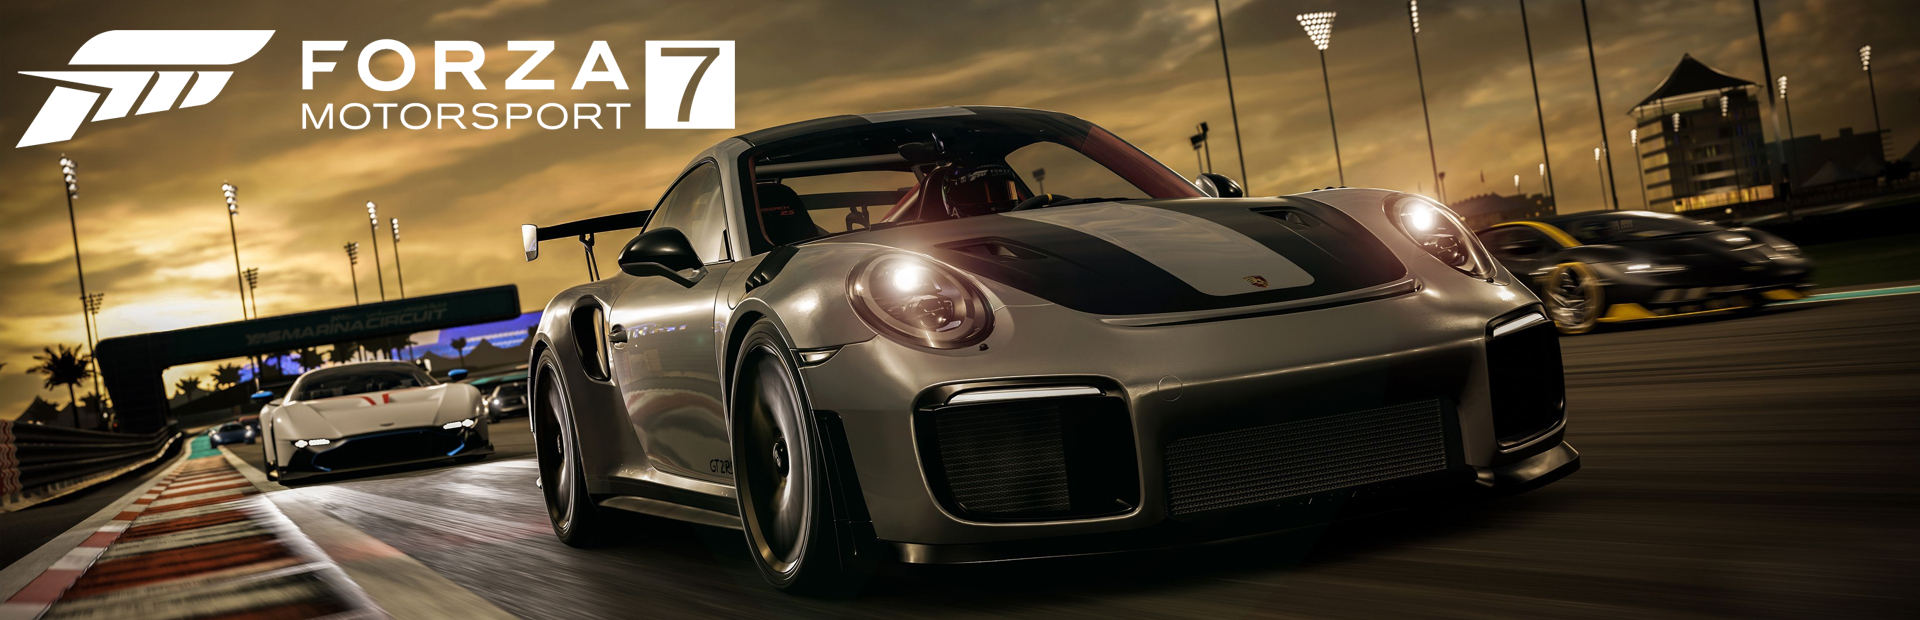 دانلود بازی Forza Motorsport 7 برای پی سی | گیمباتو